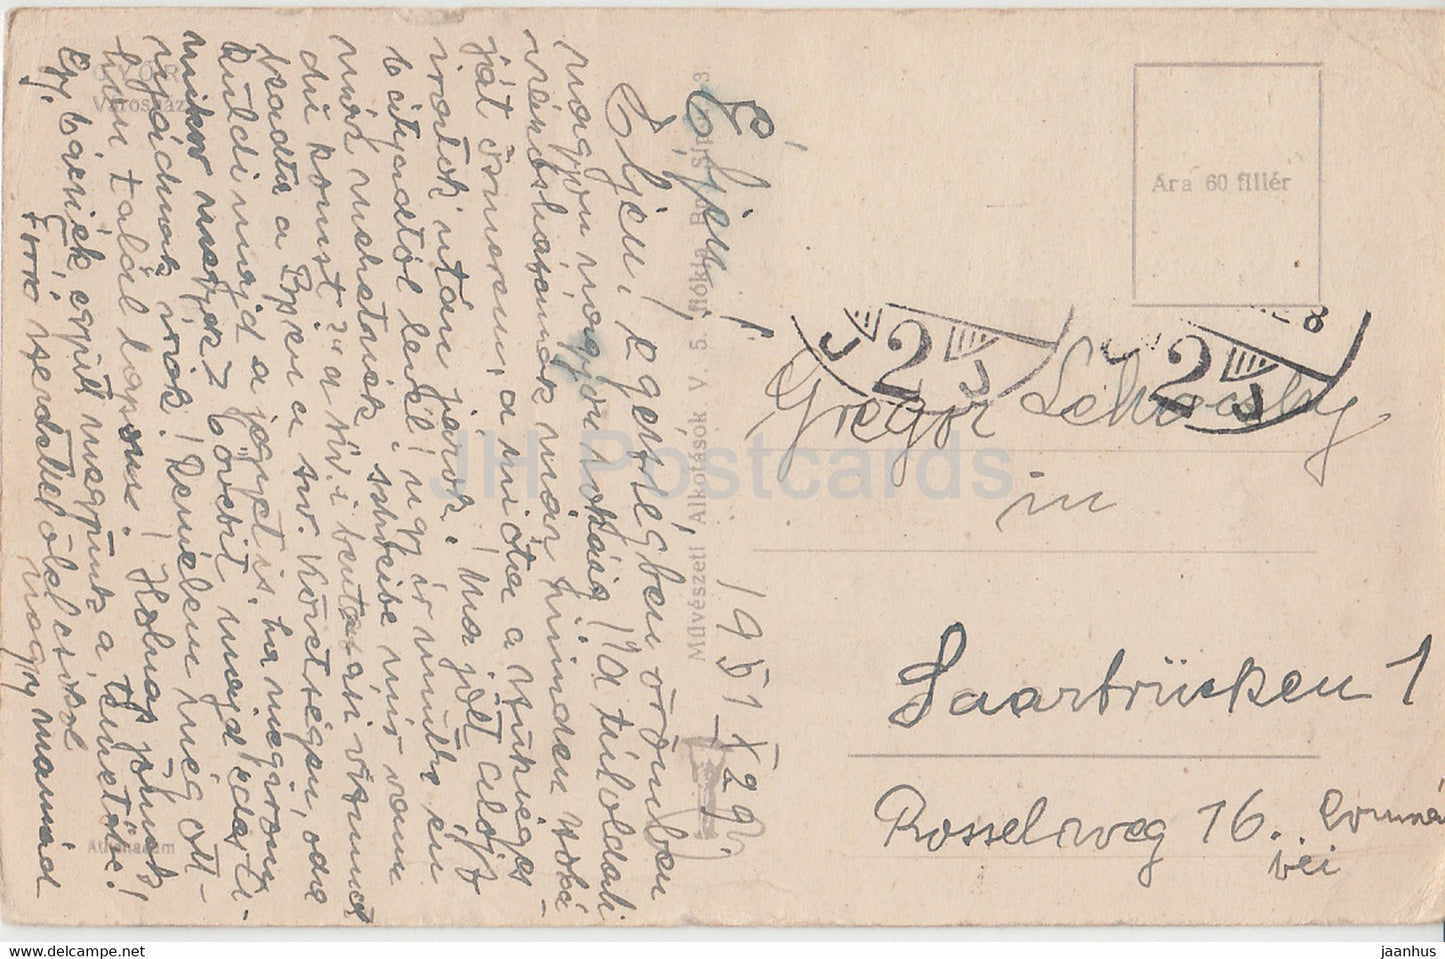 Gyor - Varoshaza - mairie - carte postale ancienne - 1929 - Hongrie - utilisé